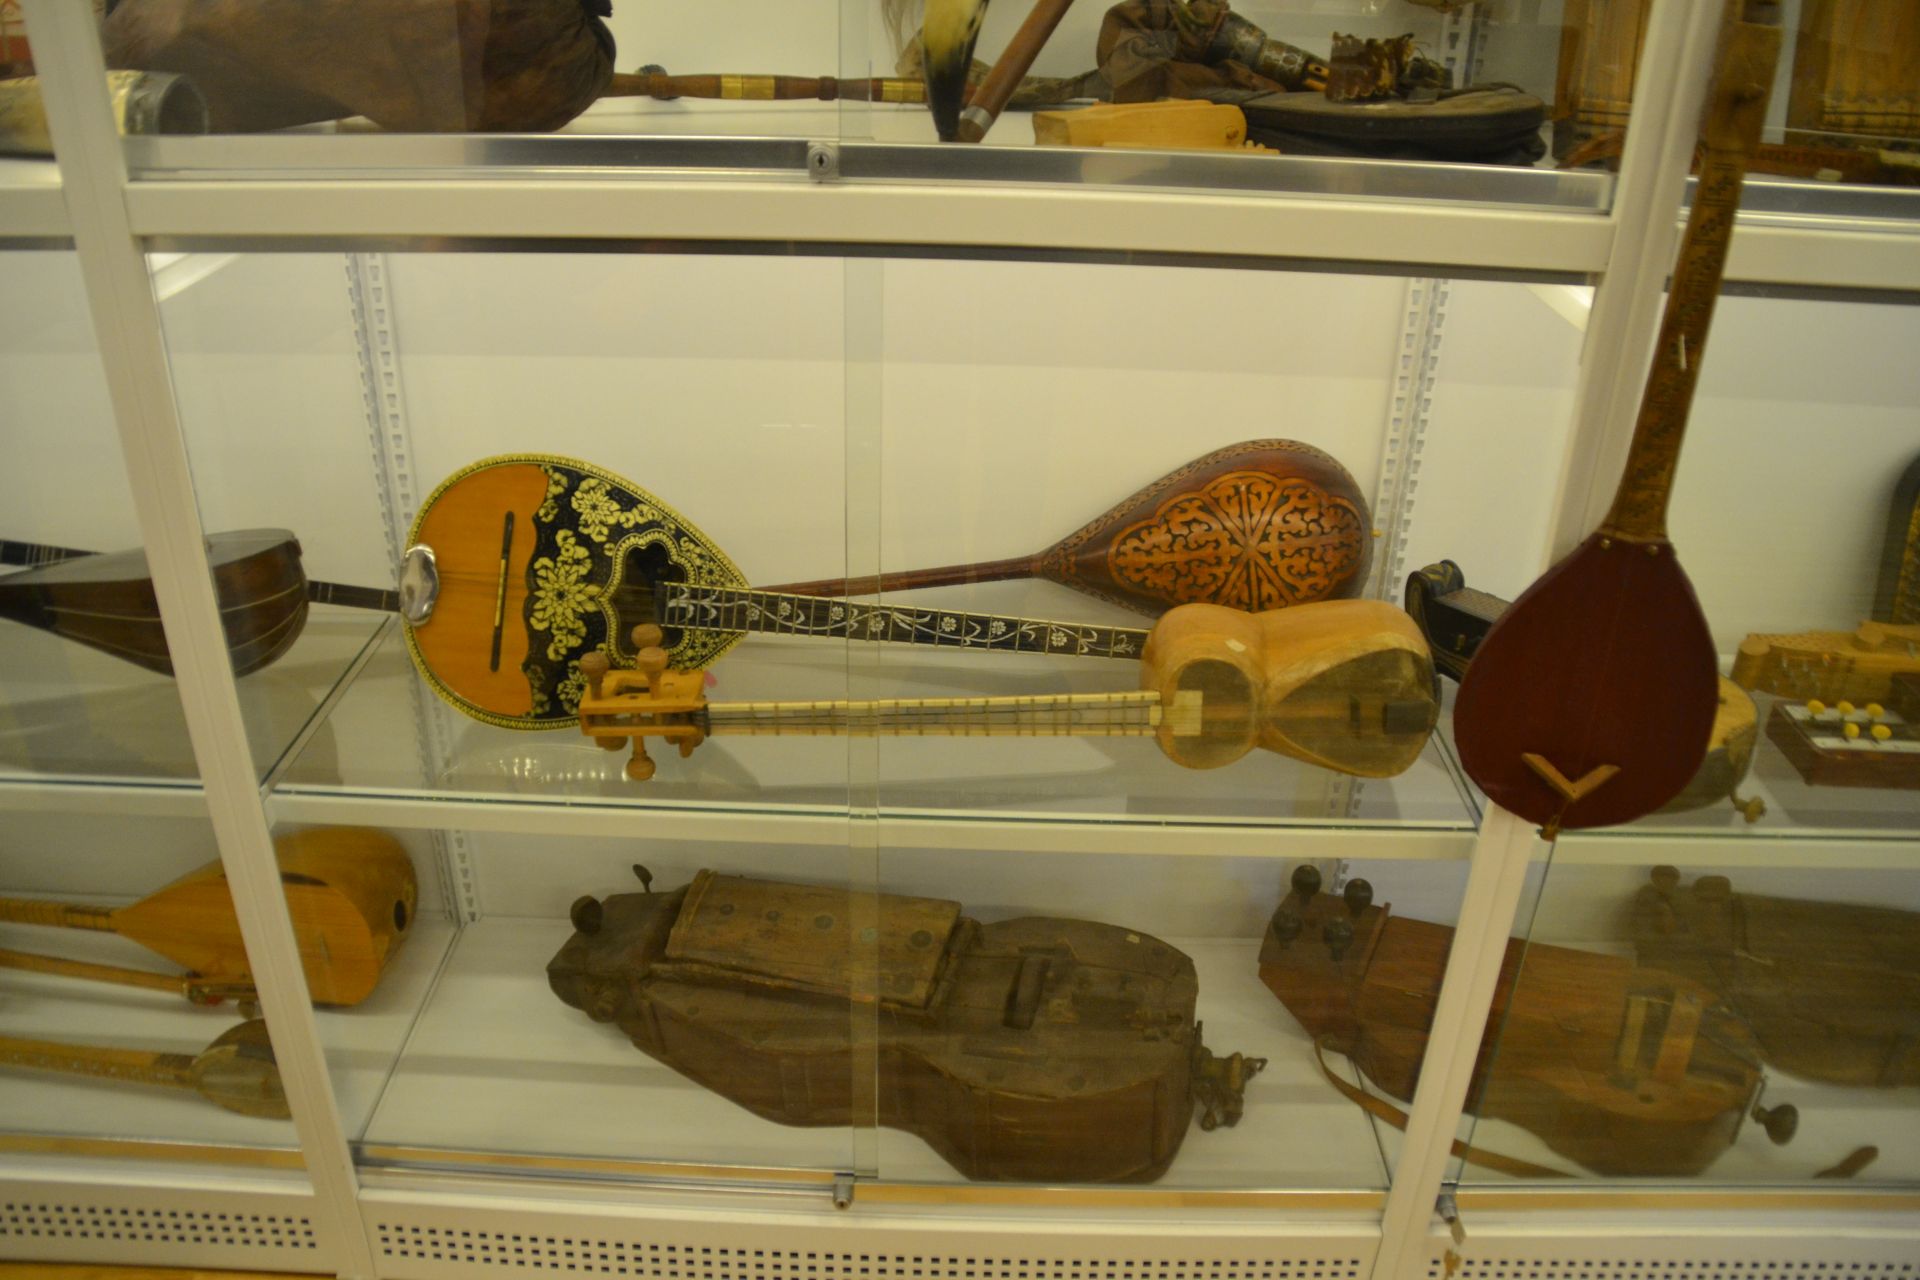 leskowsky hangszergyűjtemény kecskemét, múzeum, rákóczi utca